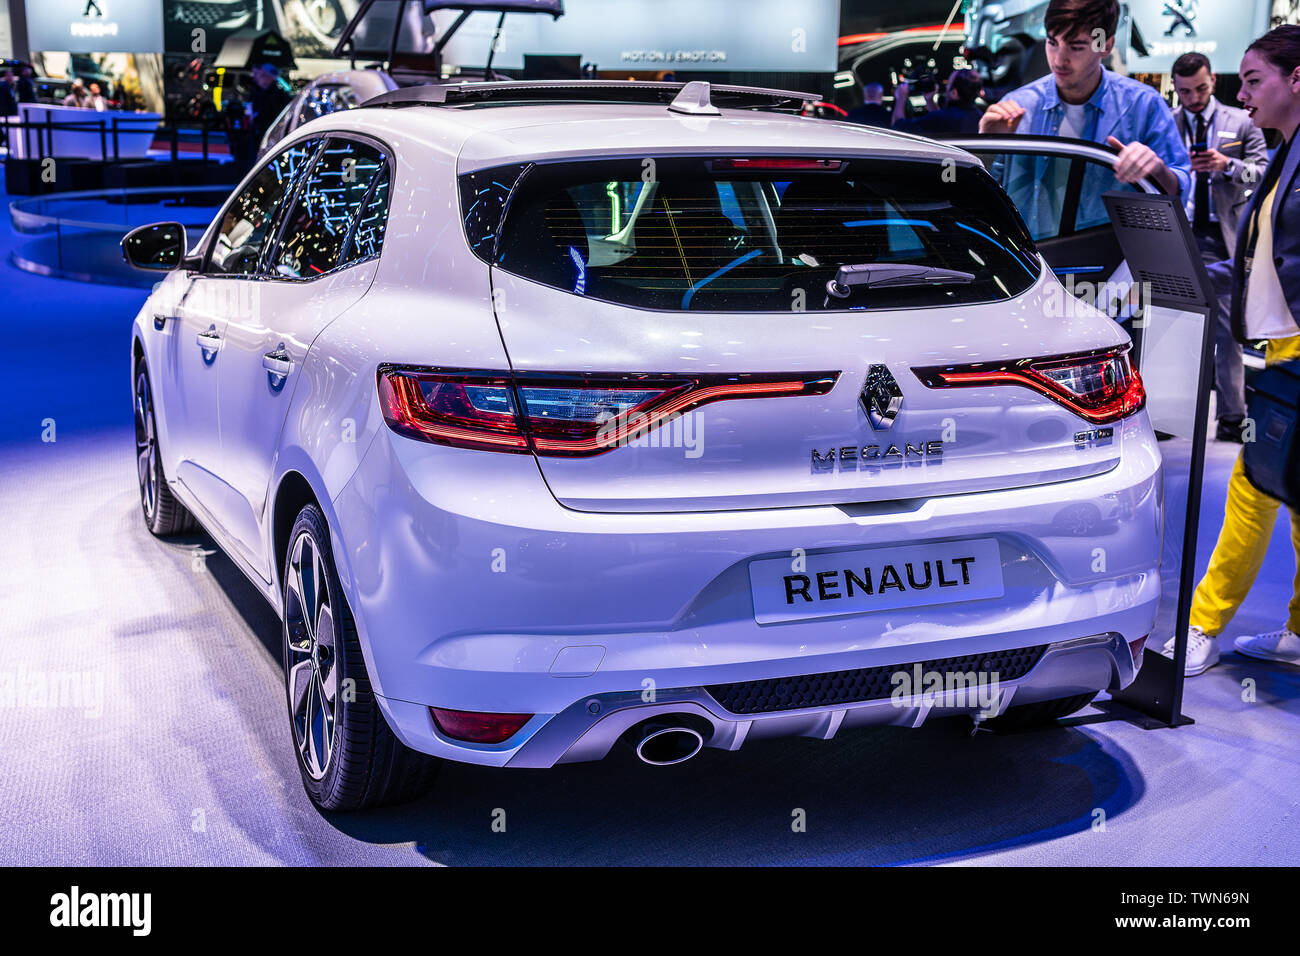 Paris, France, October 05, 2018: metallic white Renault Megane IV